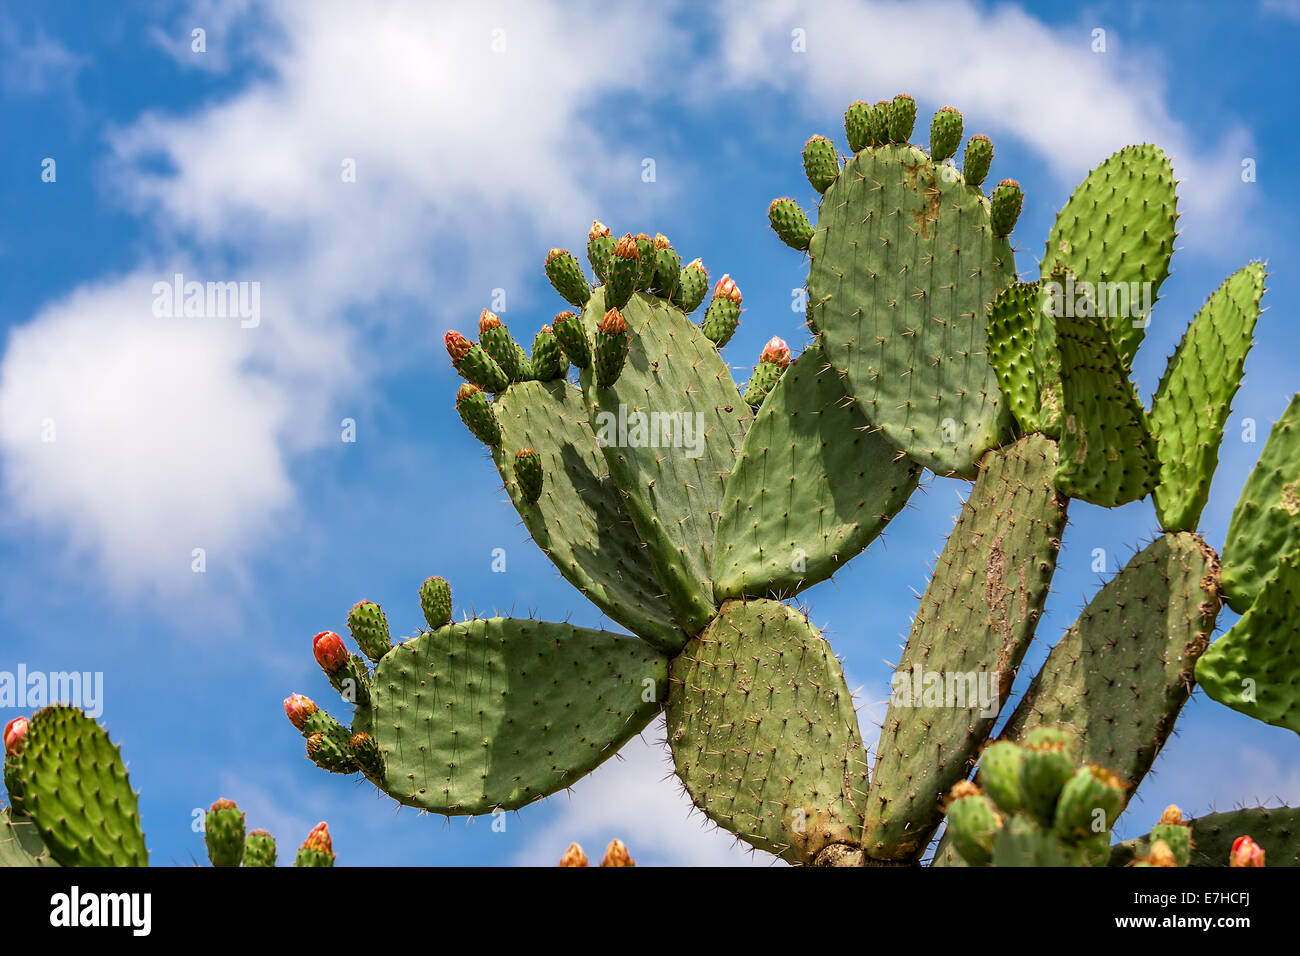 Piso Verde cladodios redondeados de cactus Opuntia con yemas contra el cielo azul con nubes blancas en Israel. Foto de stock